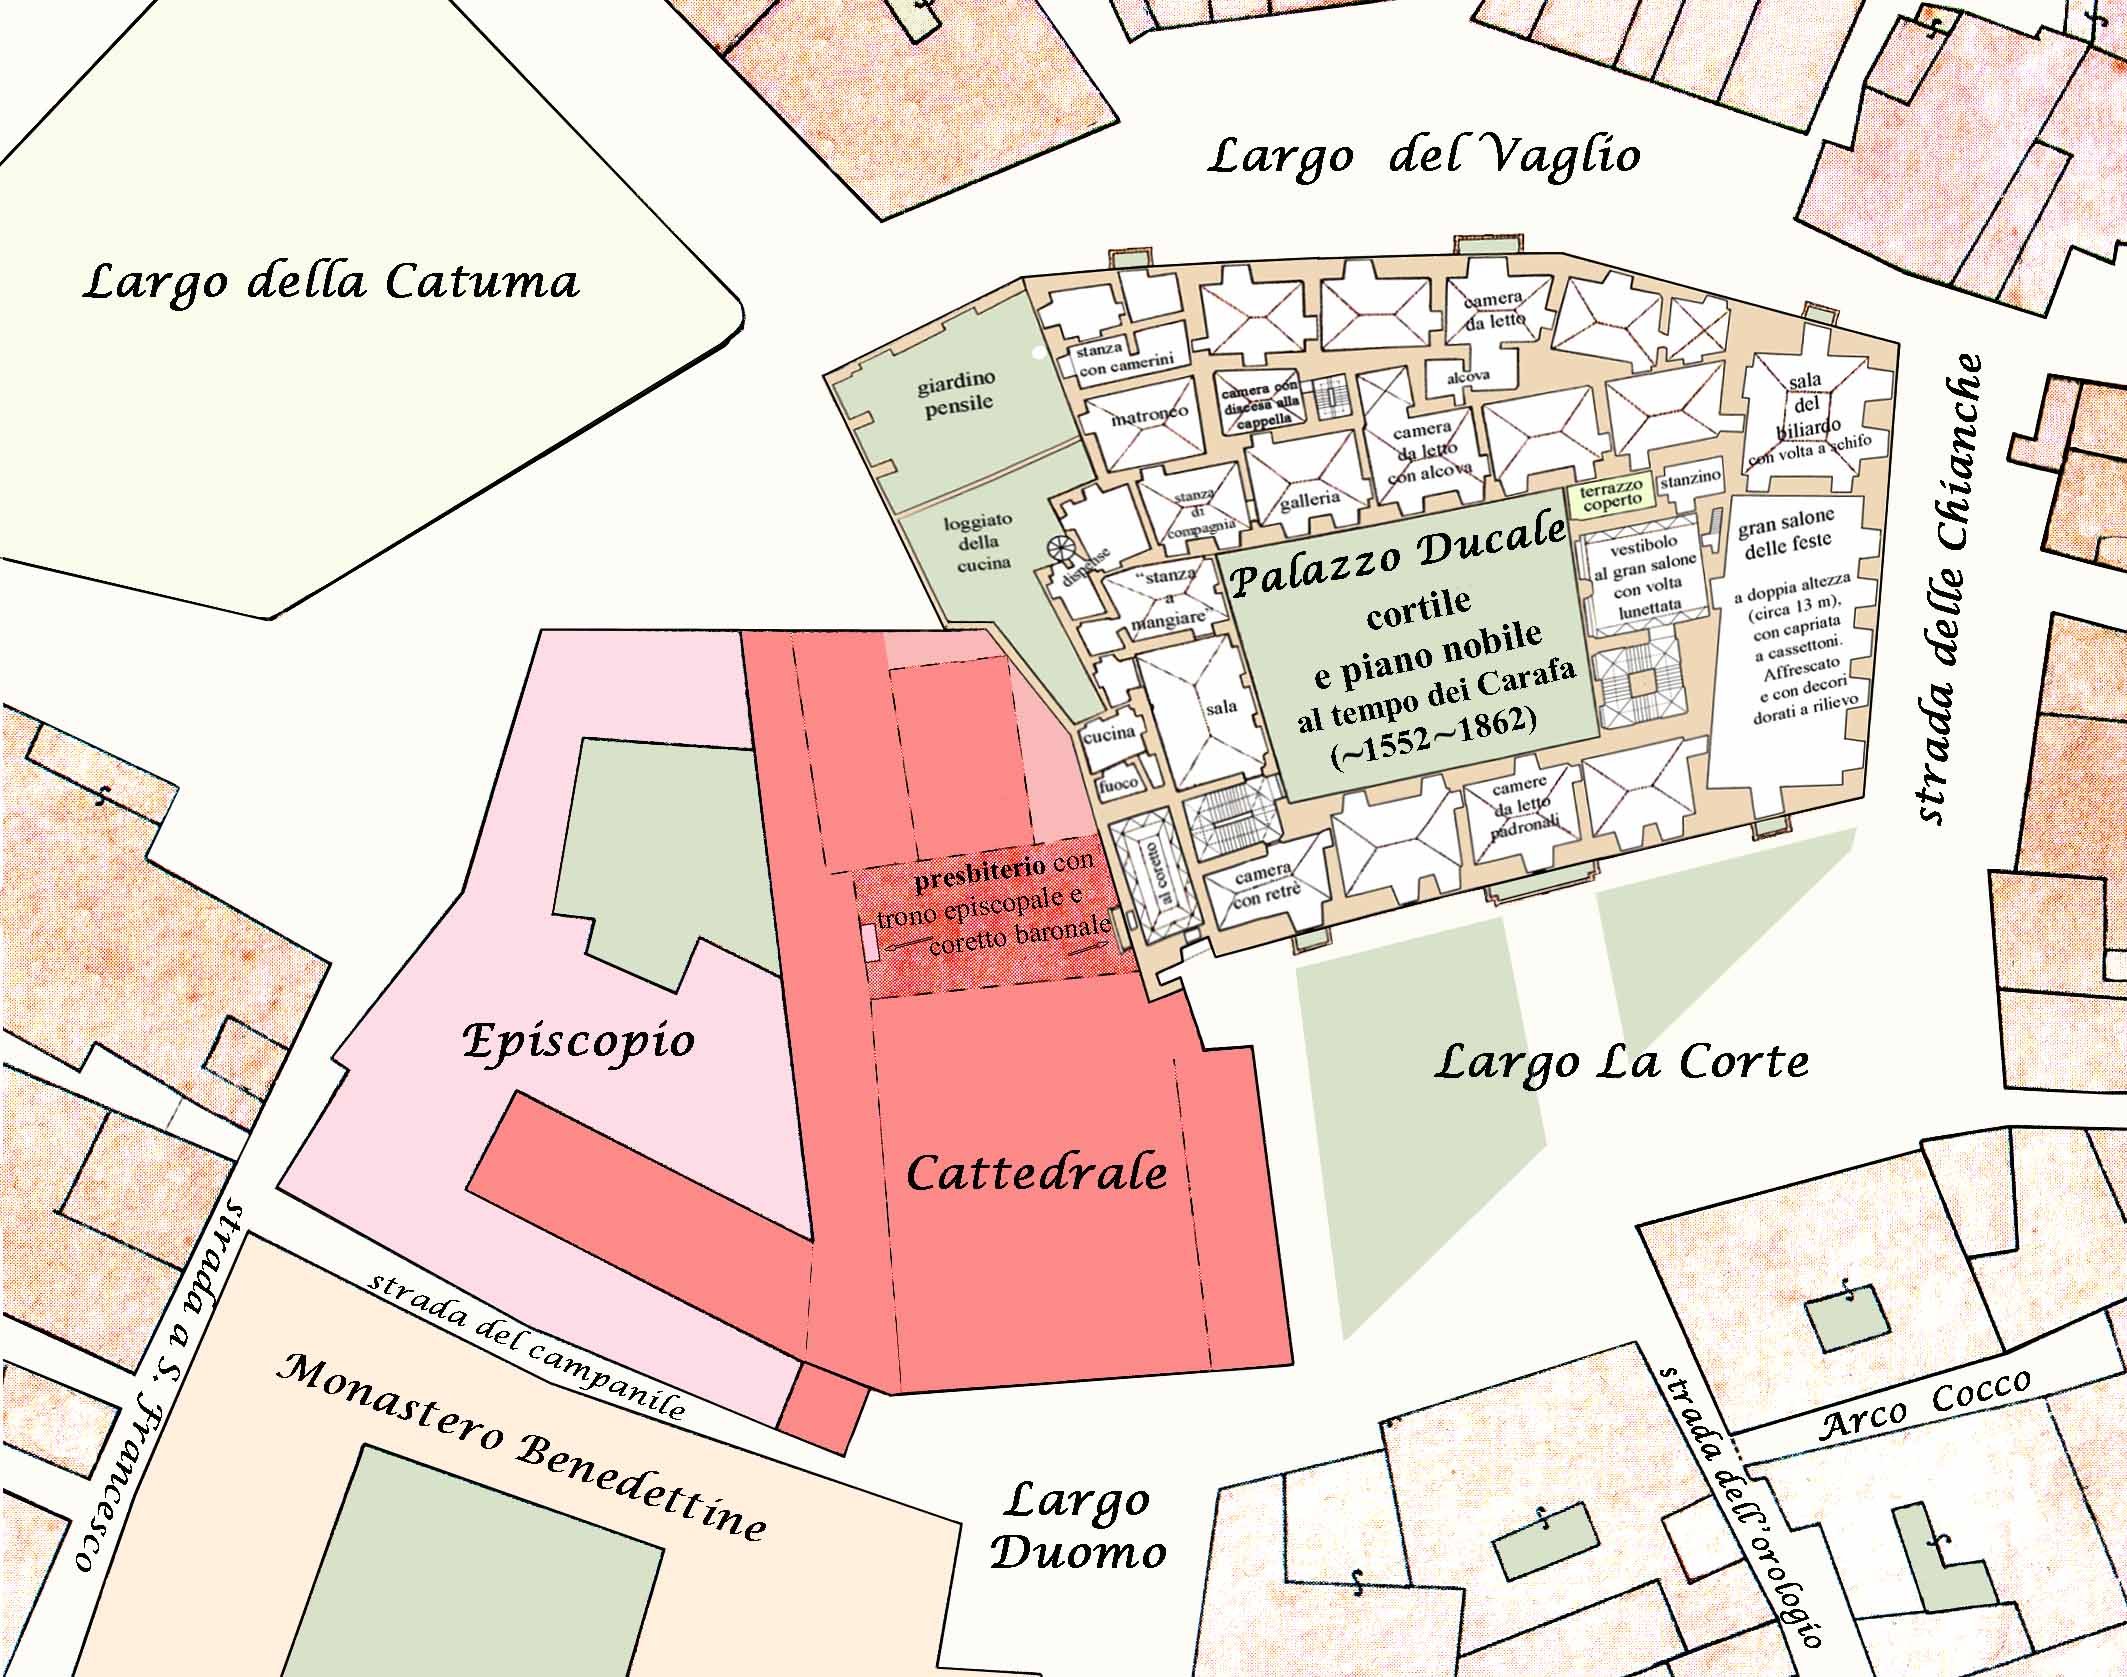 Pianta del piano nobile del Palazzo ducale nella carta topografica della Città